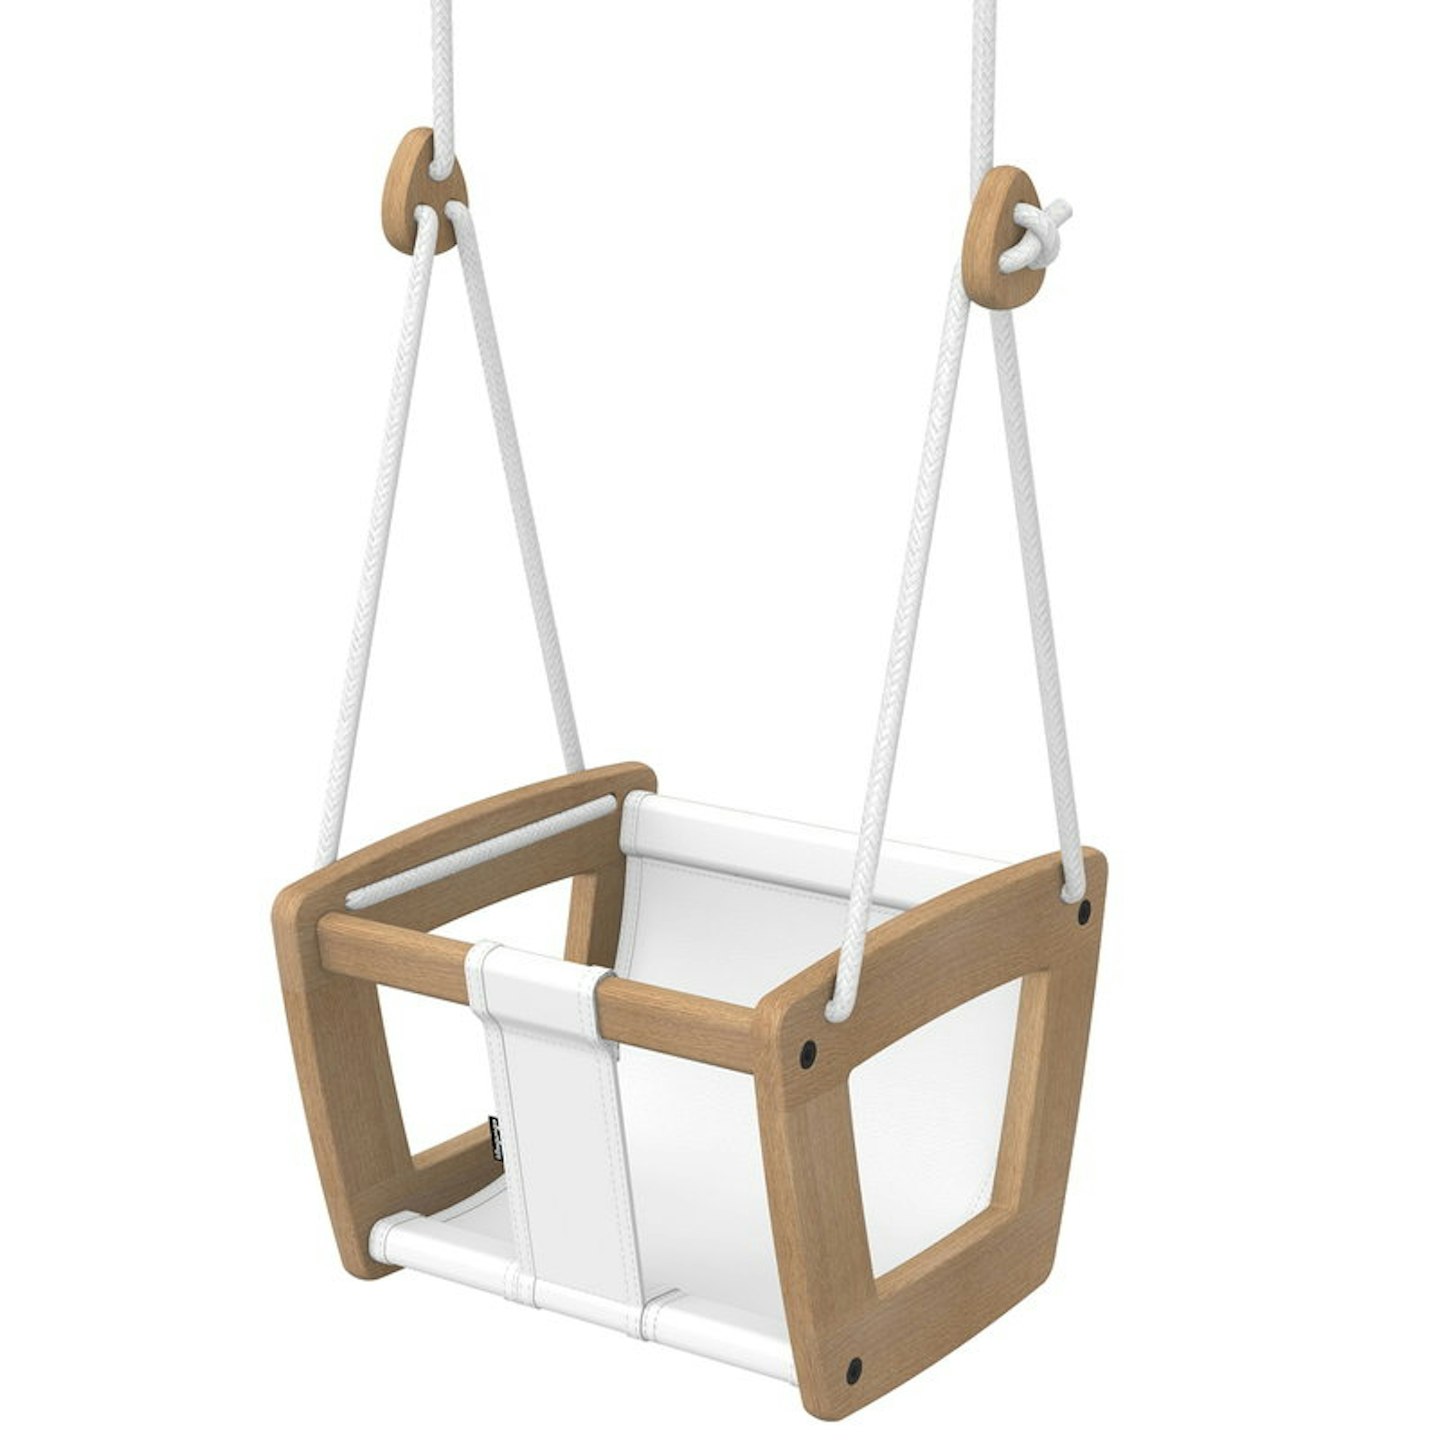 wooden swing